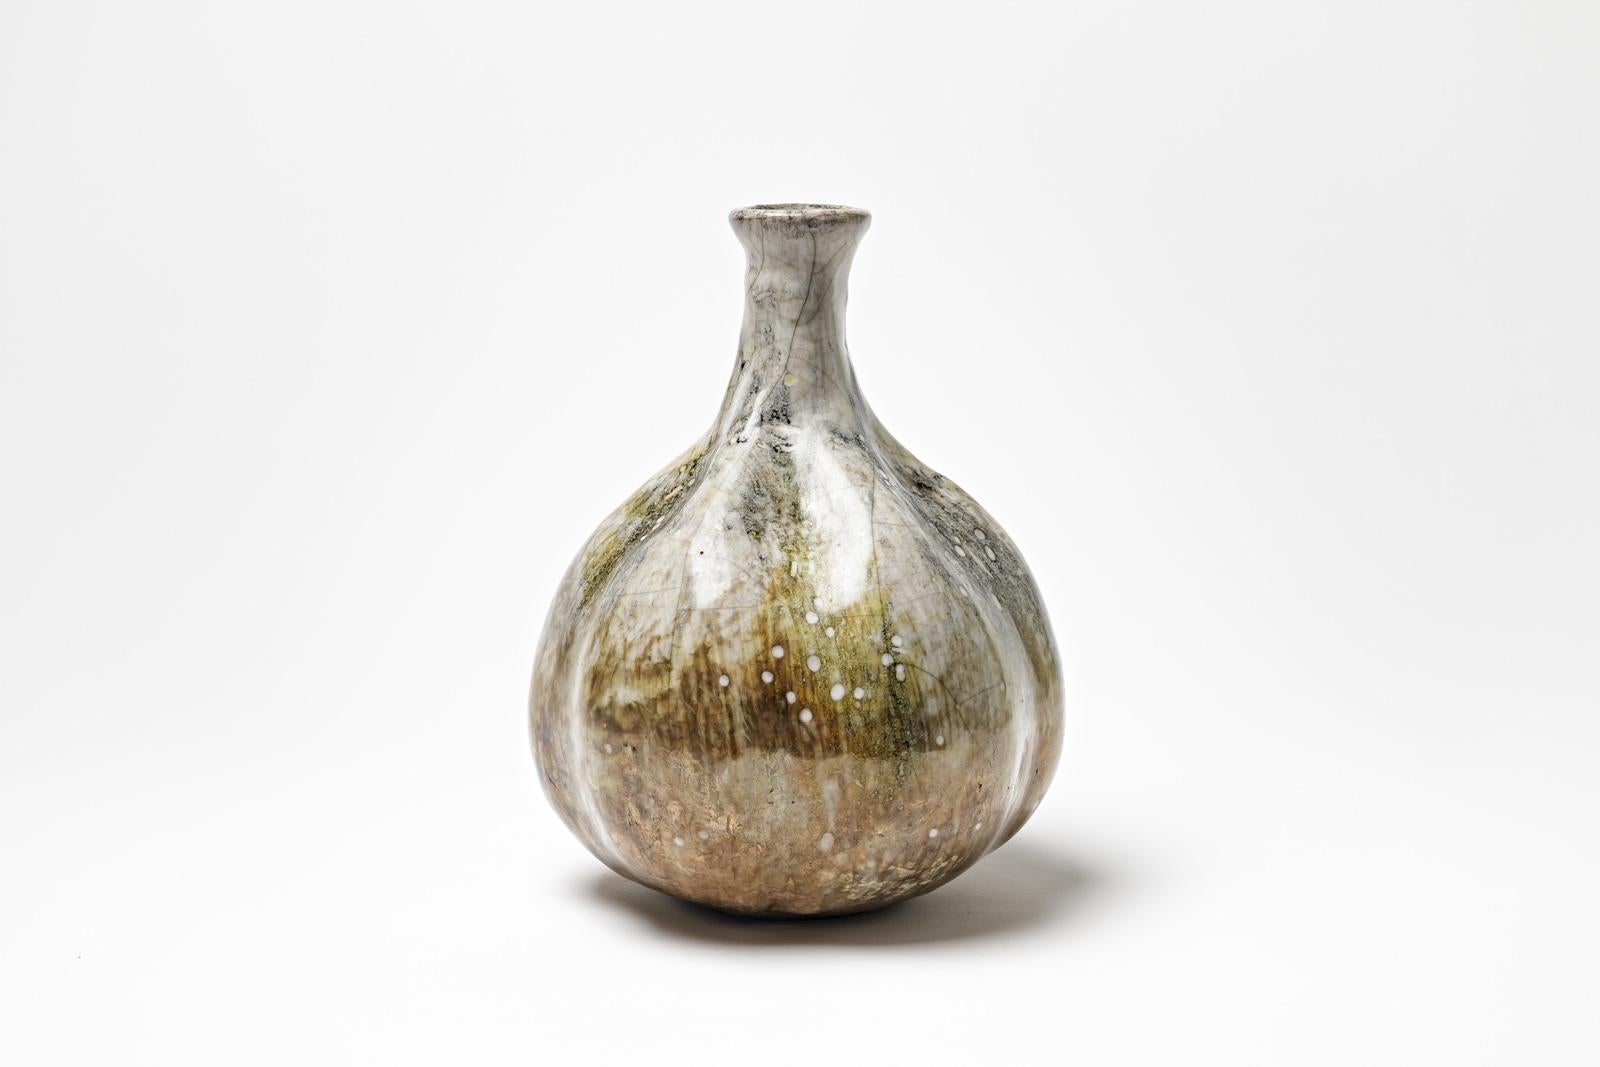 Vase en céramique émaillée blanc/brun de Gisèle Buthod Garçon. 
Raku a tiré. Monogramme de l'artiste sous la base. Vers 1980-1990. 
H : 9.4' x 5.9' pouces.